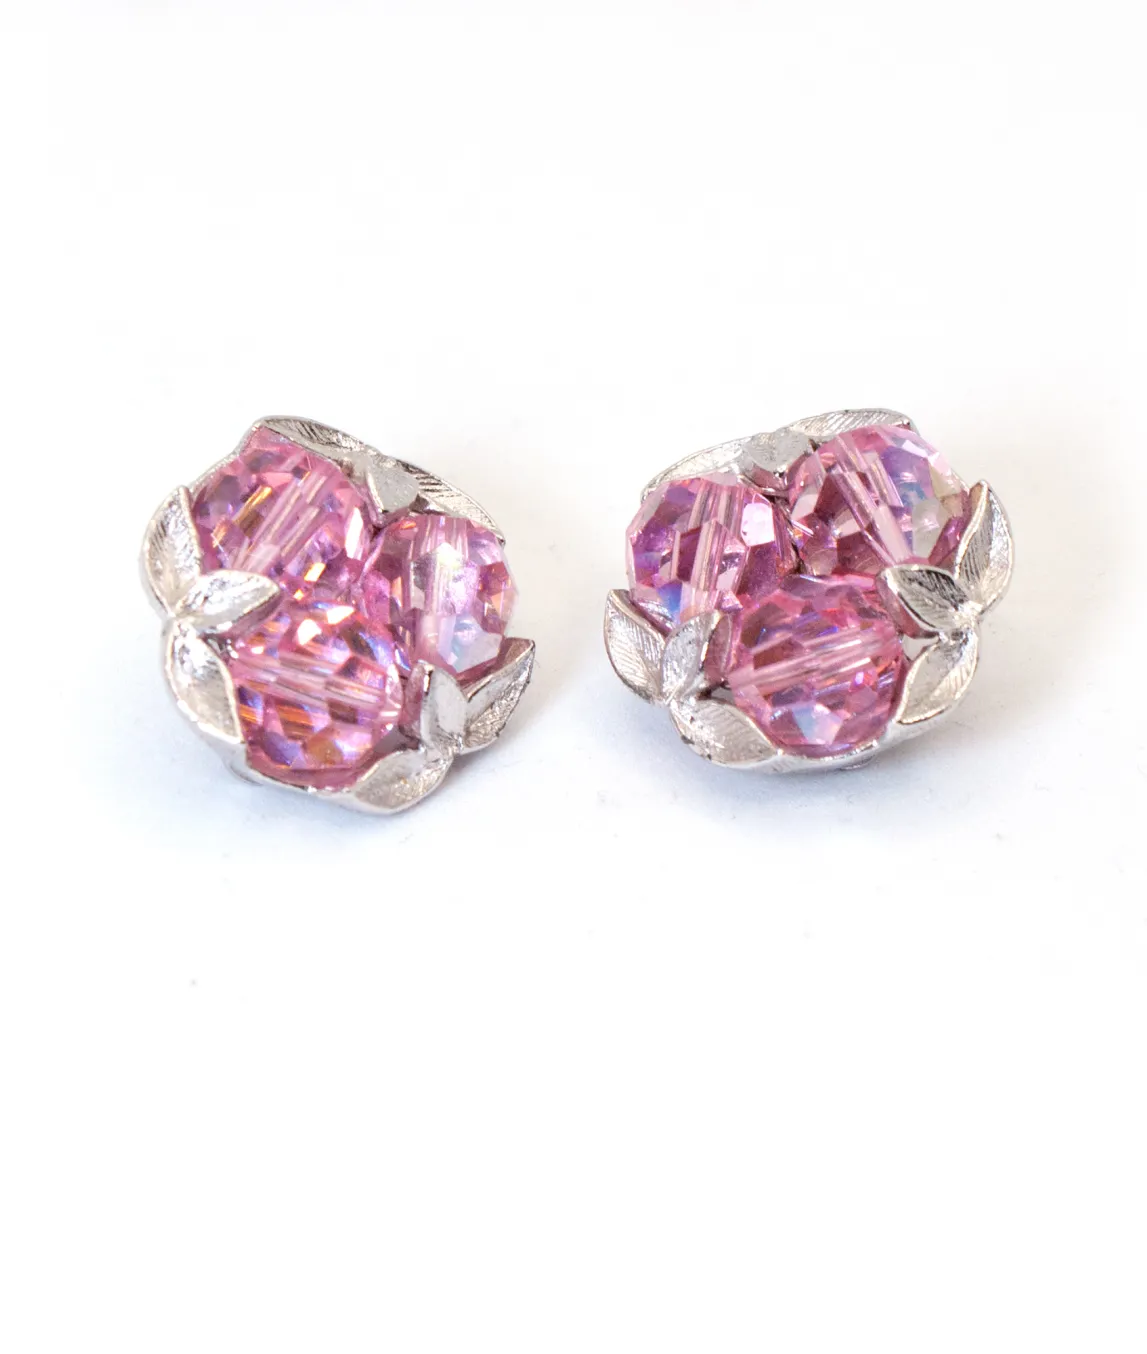 Pink crystal bead vintage earrings by G Sherman in silver metal 1960s